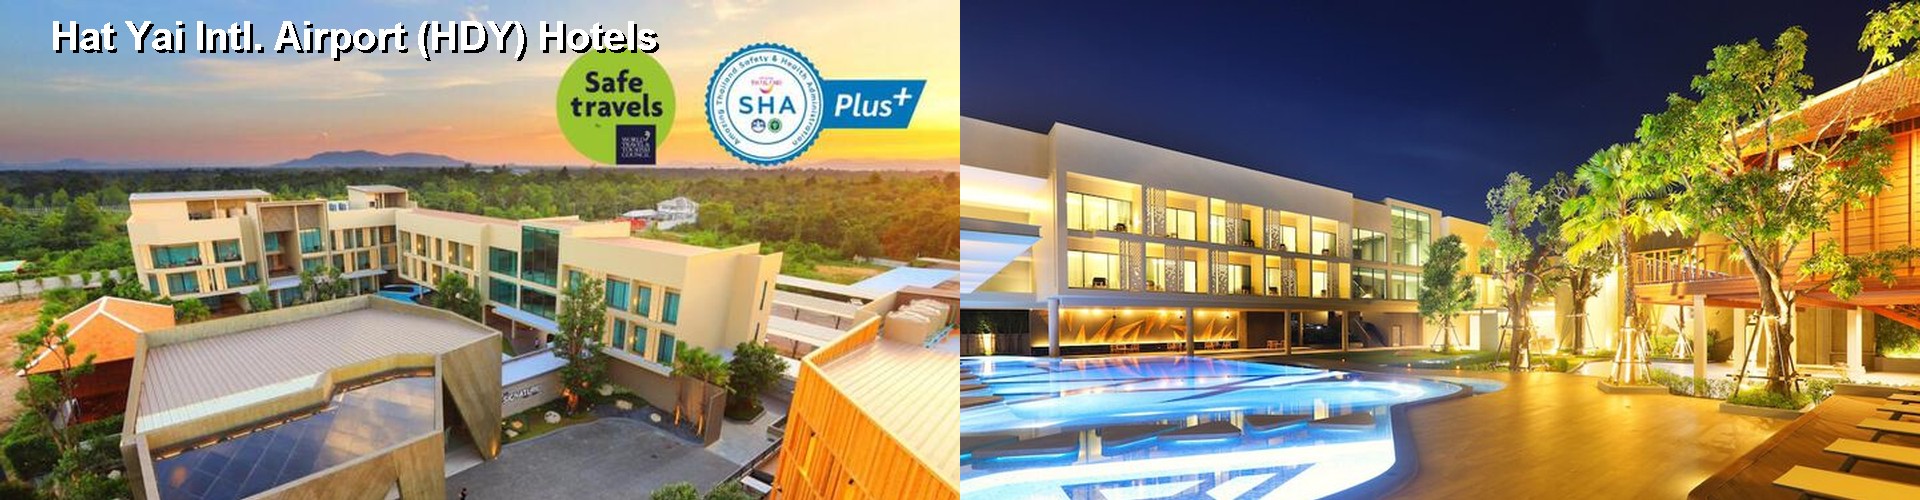 5 Best Hotels near Hat Yai Intl. Airport (HDY)